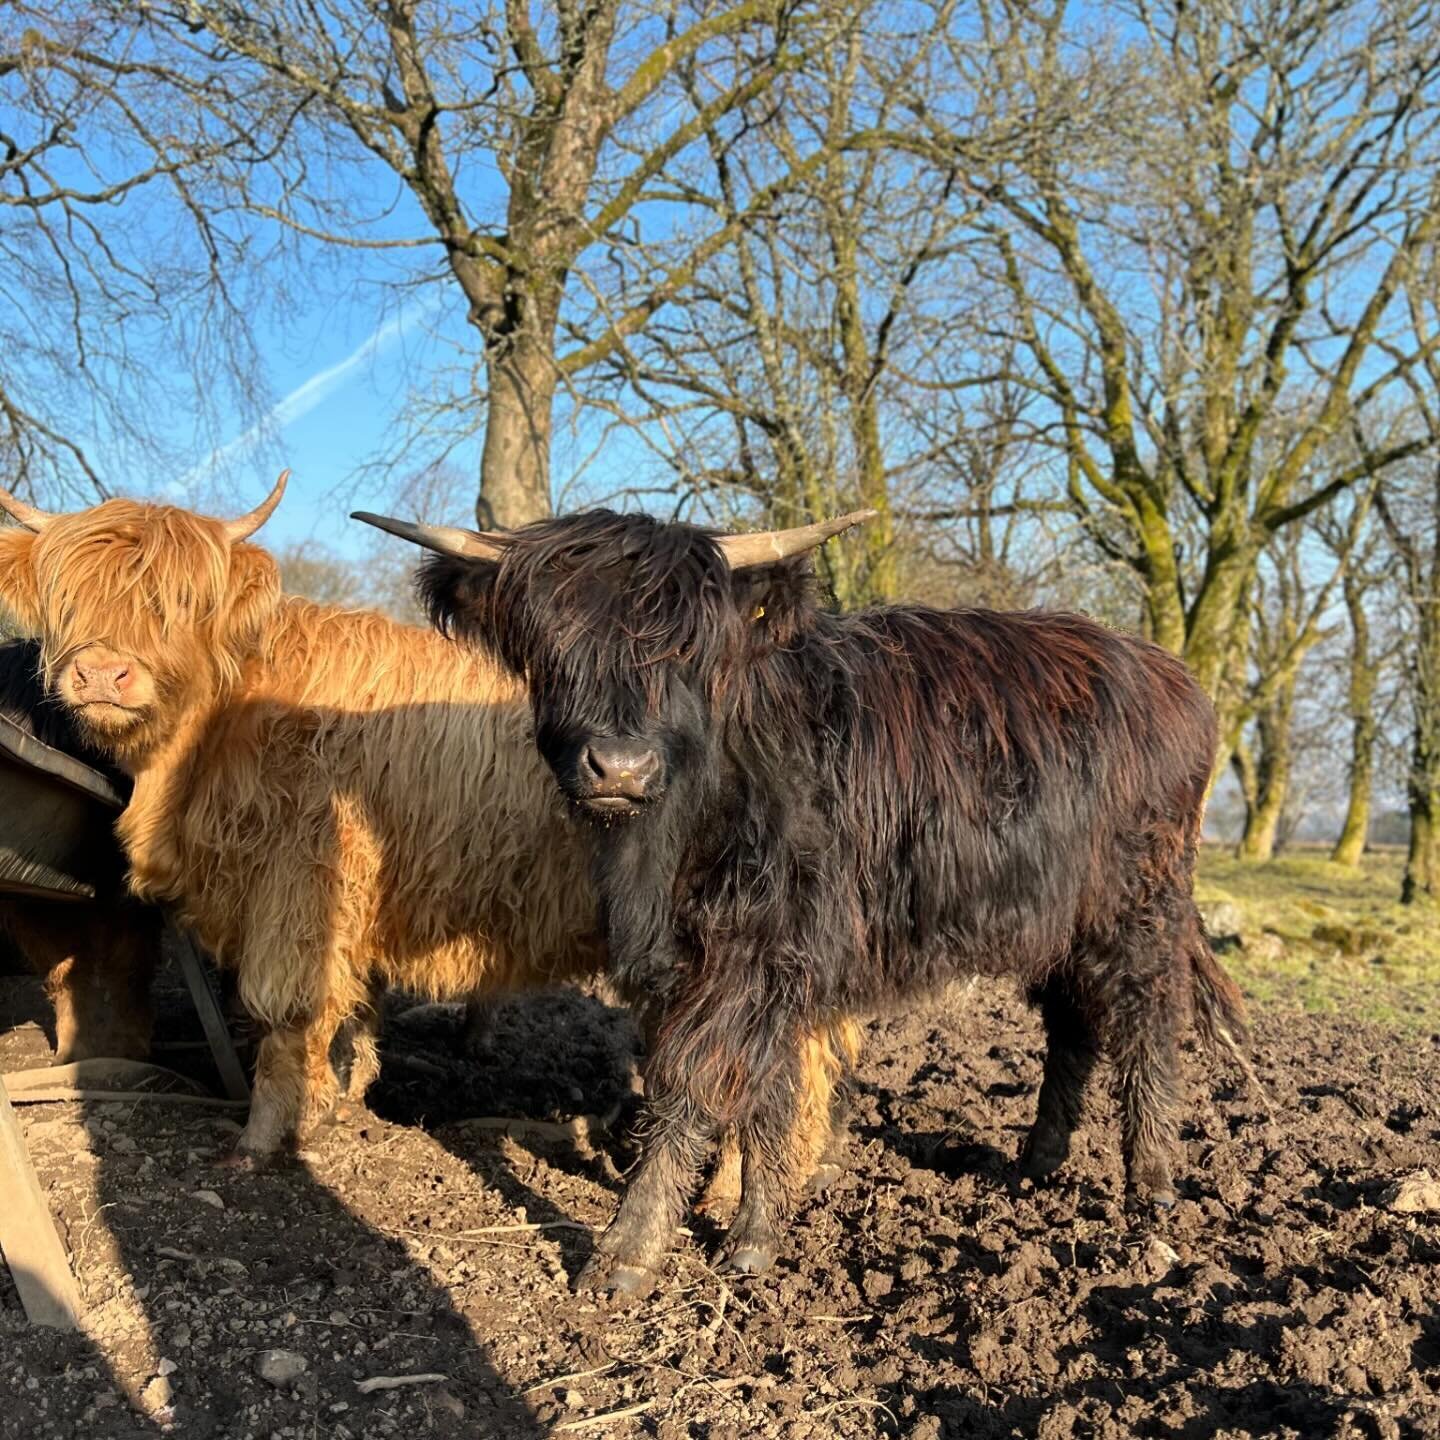 Our girls enjoying their alfresco brunch in the sun ☀️
&bull;
&bull;
&bull;
&bull;
#highlandcow #highlandcows #highlandcattle  #highlander #shorthorn #calf #calvingseason #calving #cow #cows #cattle #cowsofinstagram #scottishcattle #farm #familyfarm 